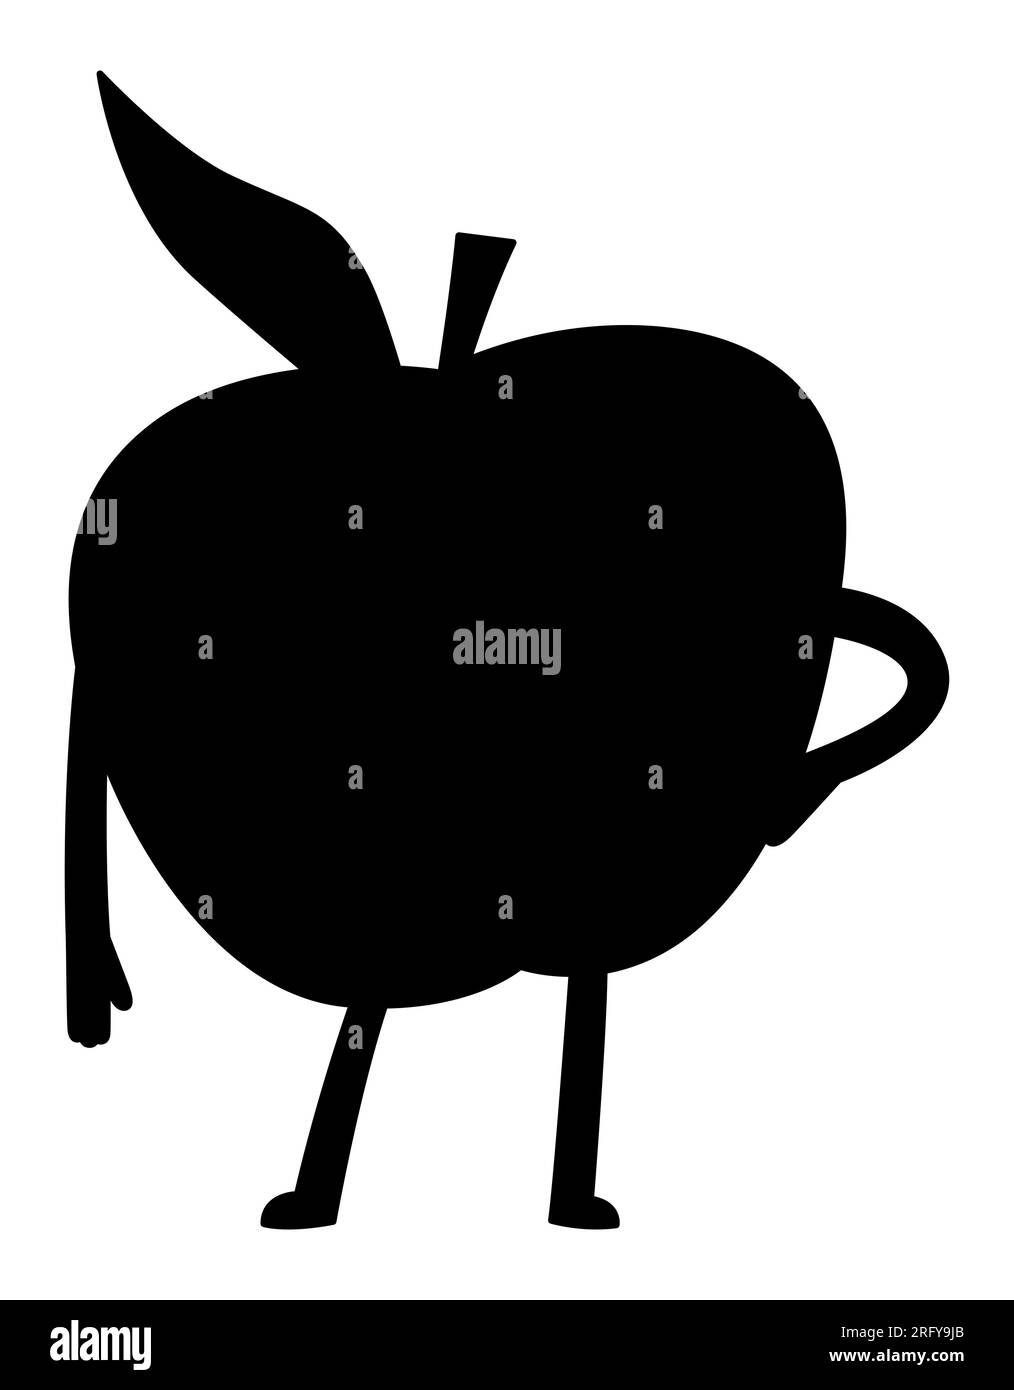 Personnage de fruit de pomme de dessin animé avec les mains et les jambes, logo de saine alimentation, caractère vecteur de fruit d'été, silhouette Illustration de Vecteur